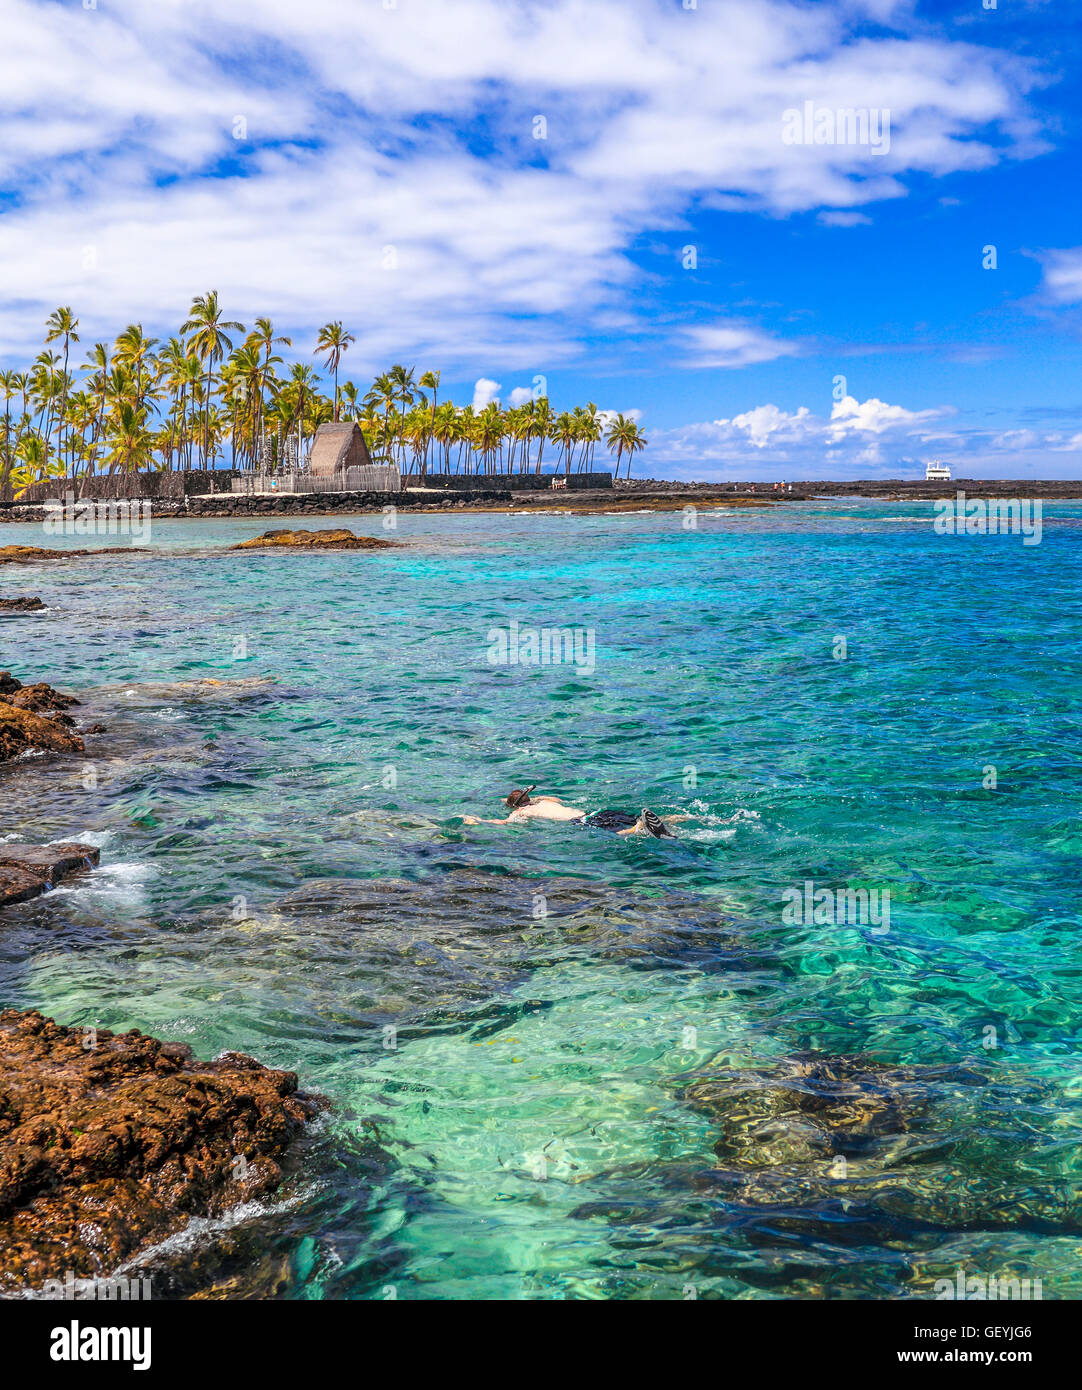 Schnorchler in zwei Schritten auf der Big Island von Hawaii; Blick auf Puuhonau O Honaunau, Stadt der Zuflucht, ein nationaler historischer park Stockfoto